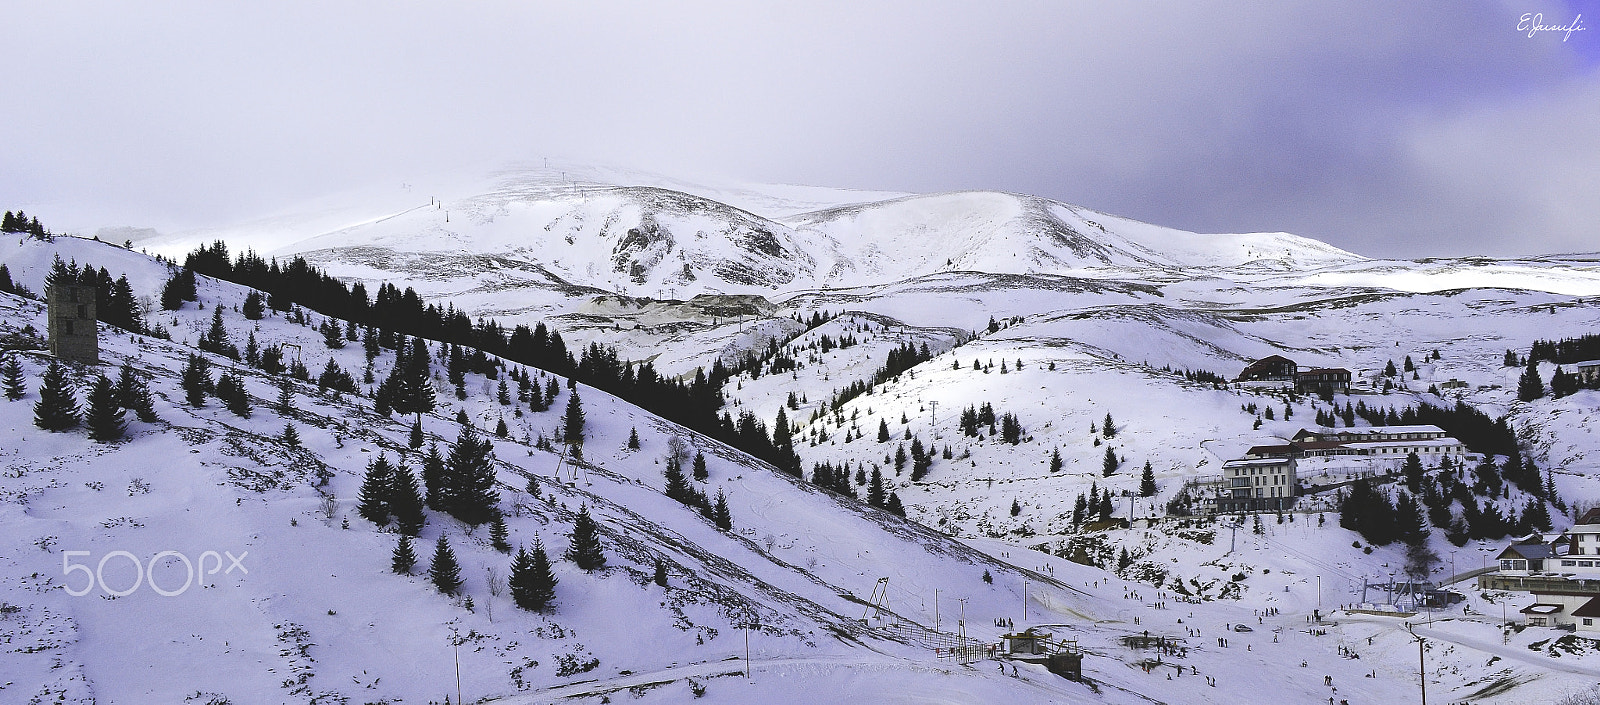 Nikon D3100 + Nikon AF-S DX Nikkor 17-55mm F2.8G ED-IF sample photo. Landscape in winter season photography